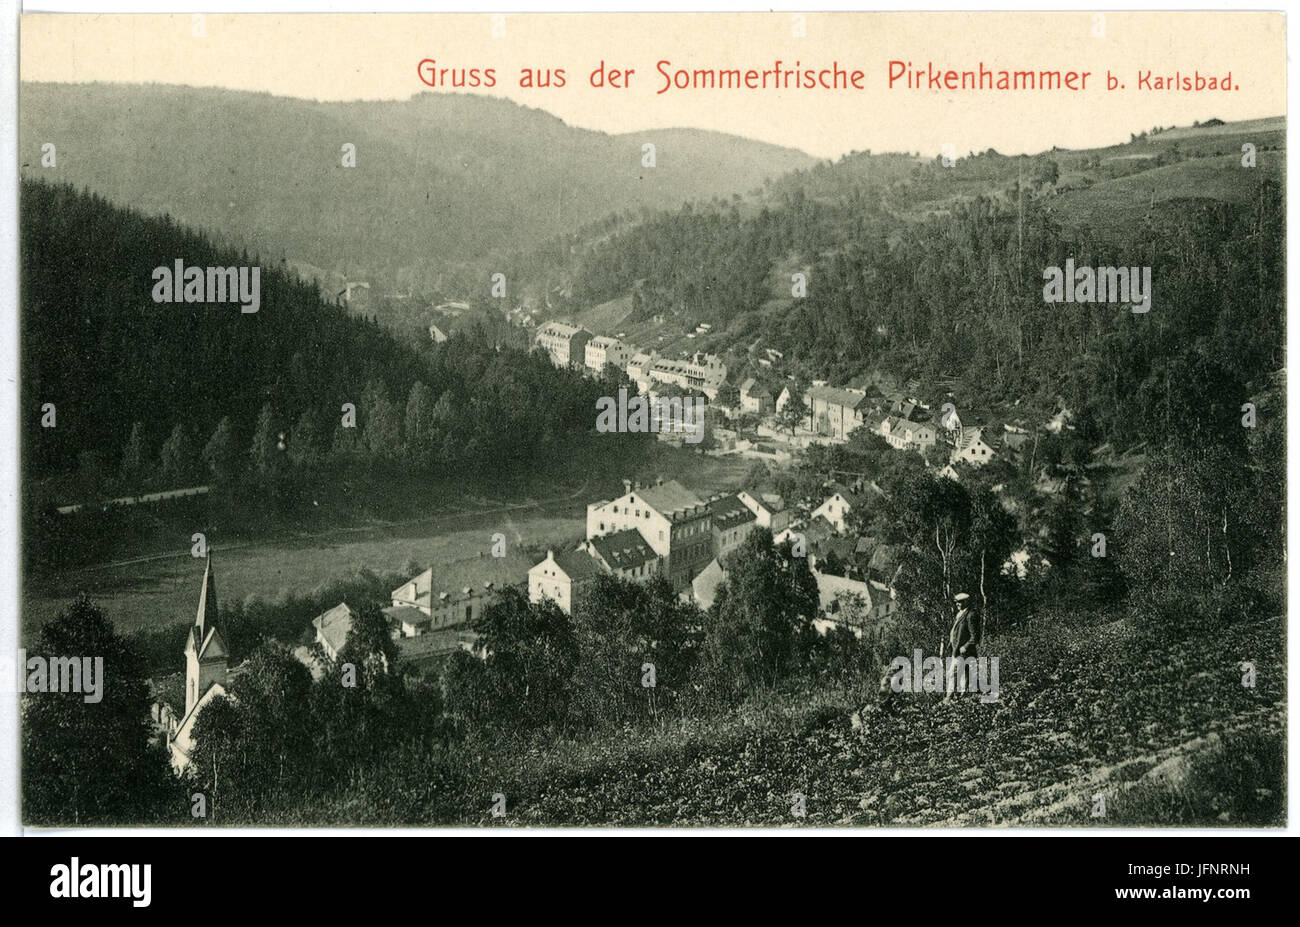 01756-Pirkenhammer-1901-Blick auf Pirkenhammer-Brück & Sohn Kunstverlag Stock Photo